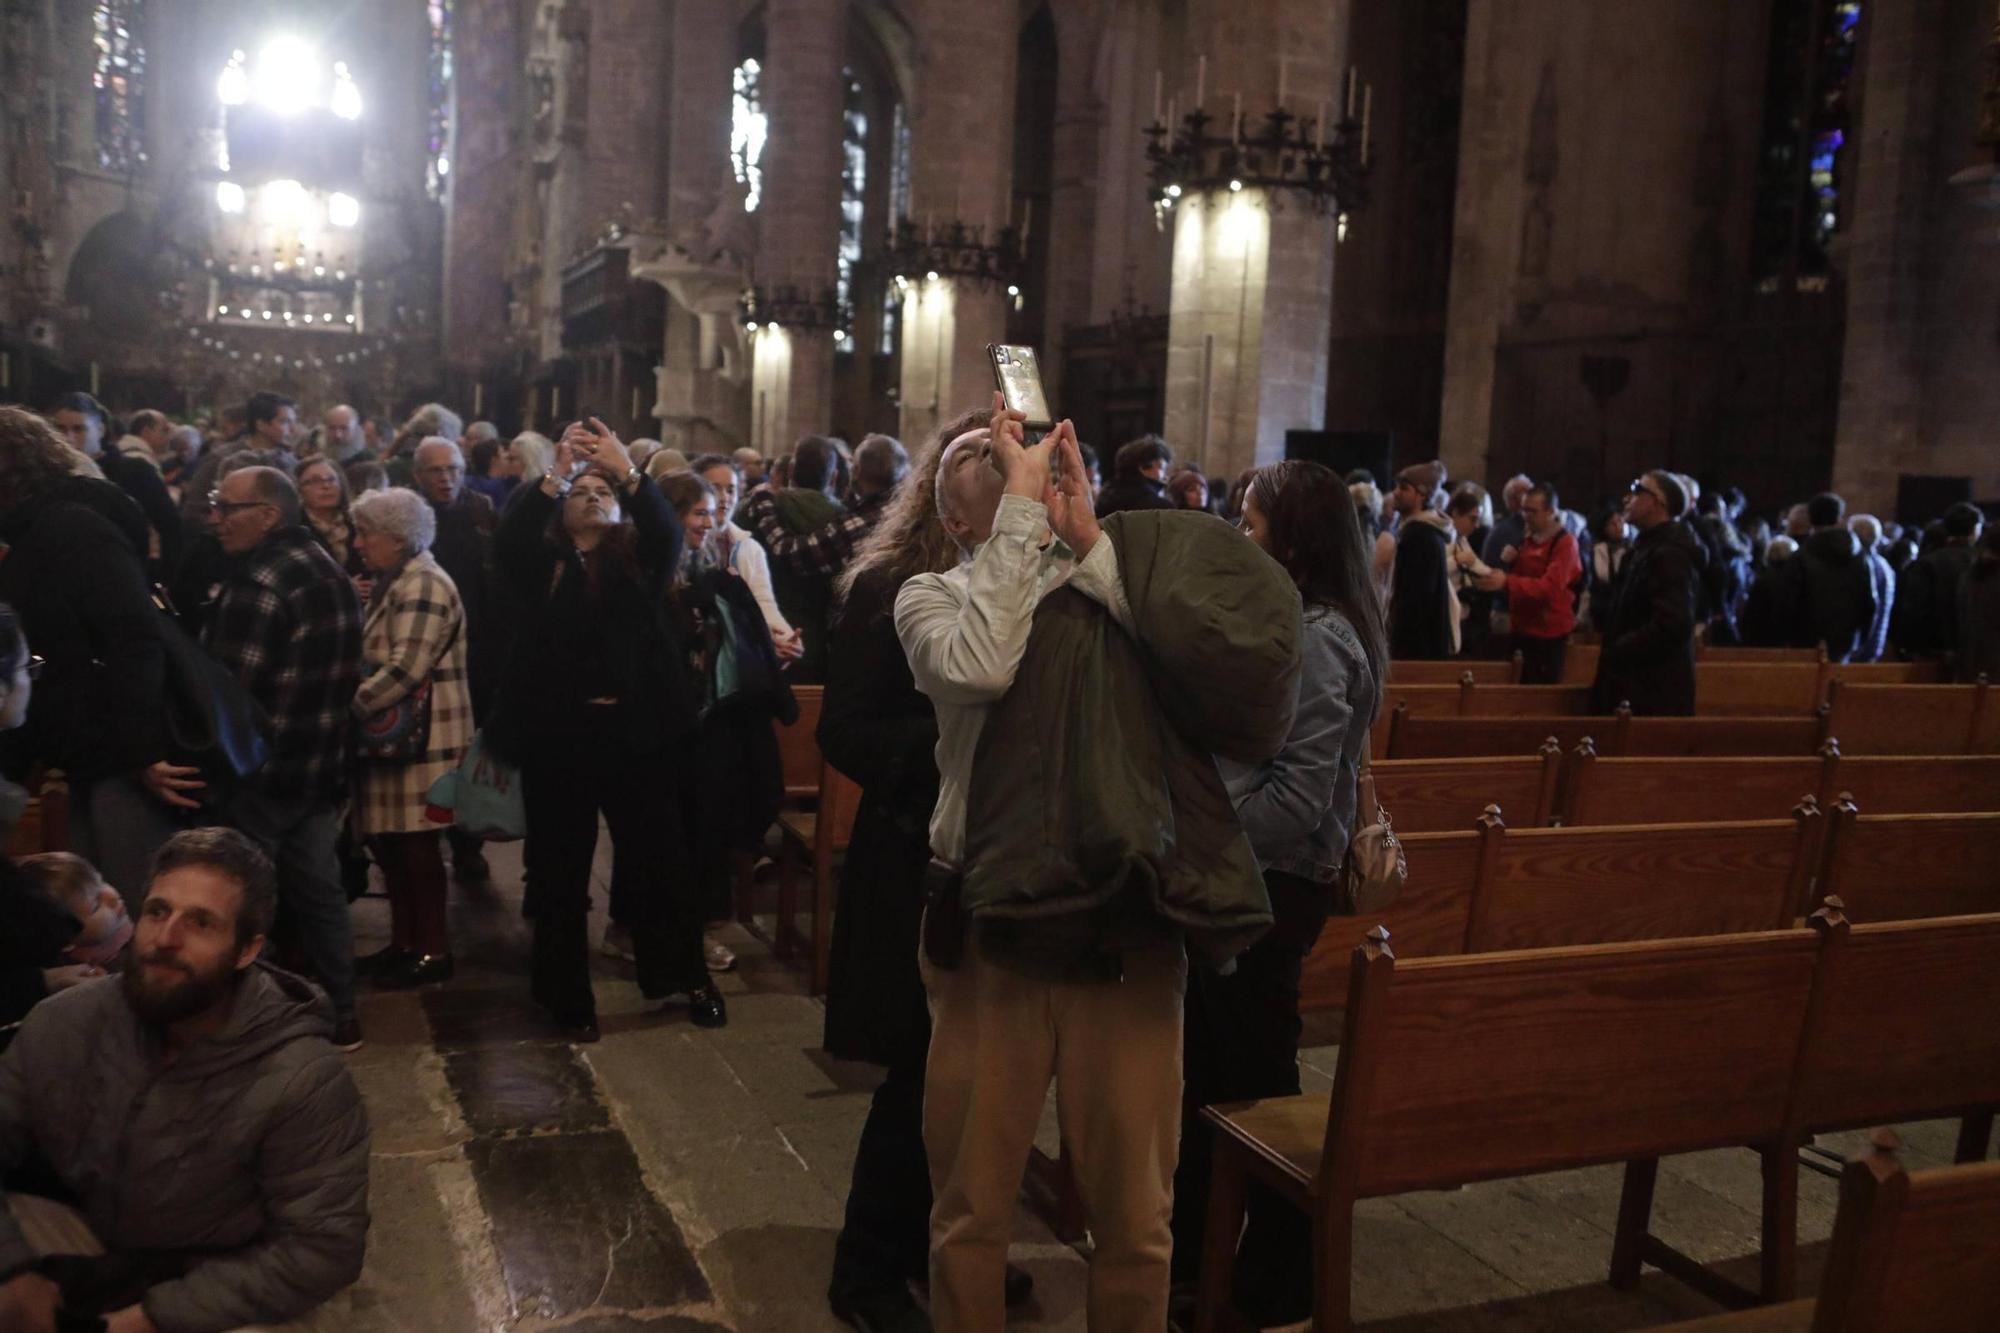 El 'Vuit de la Seu' ilumina la Catedral de Mallorca